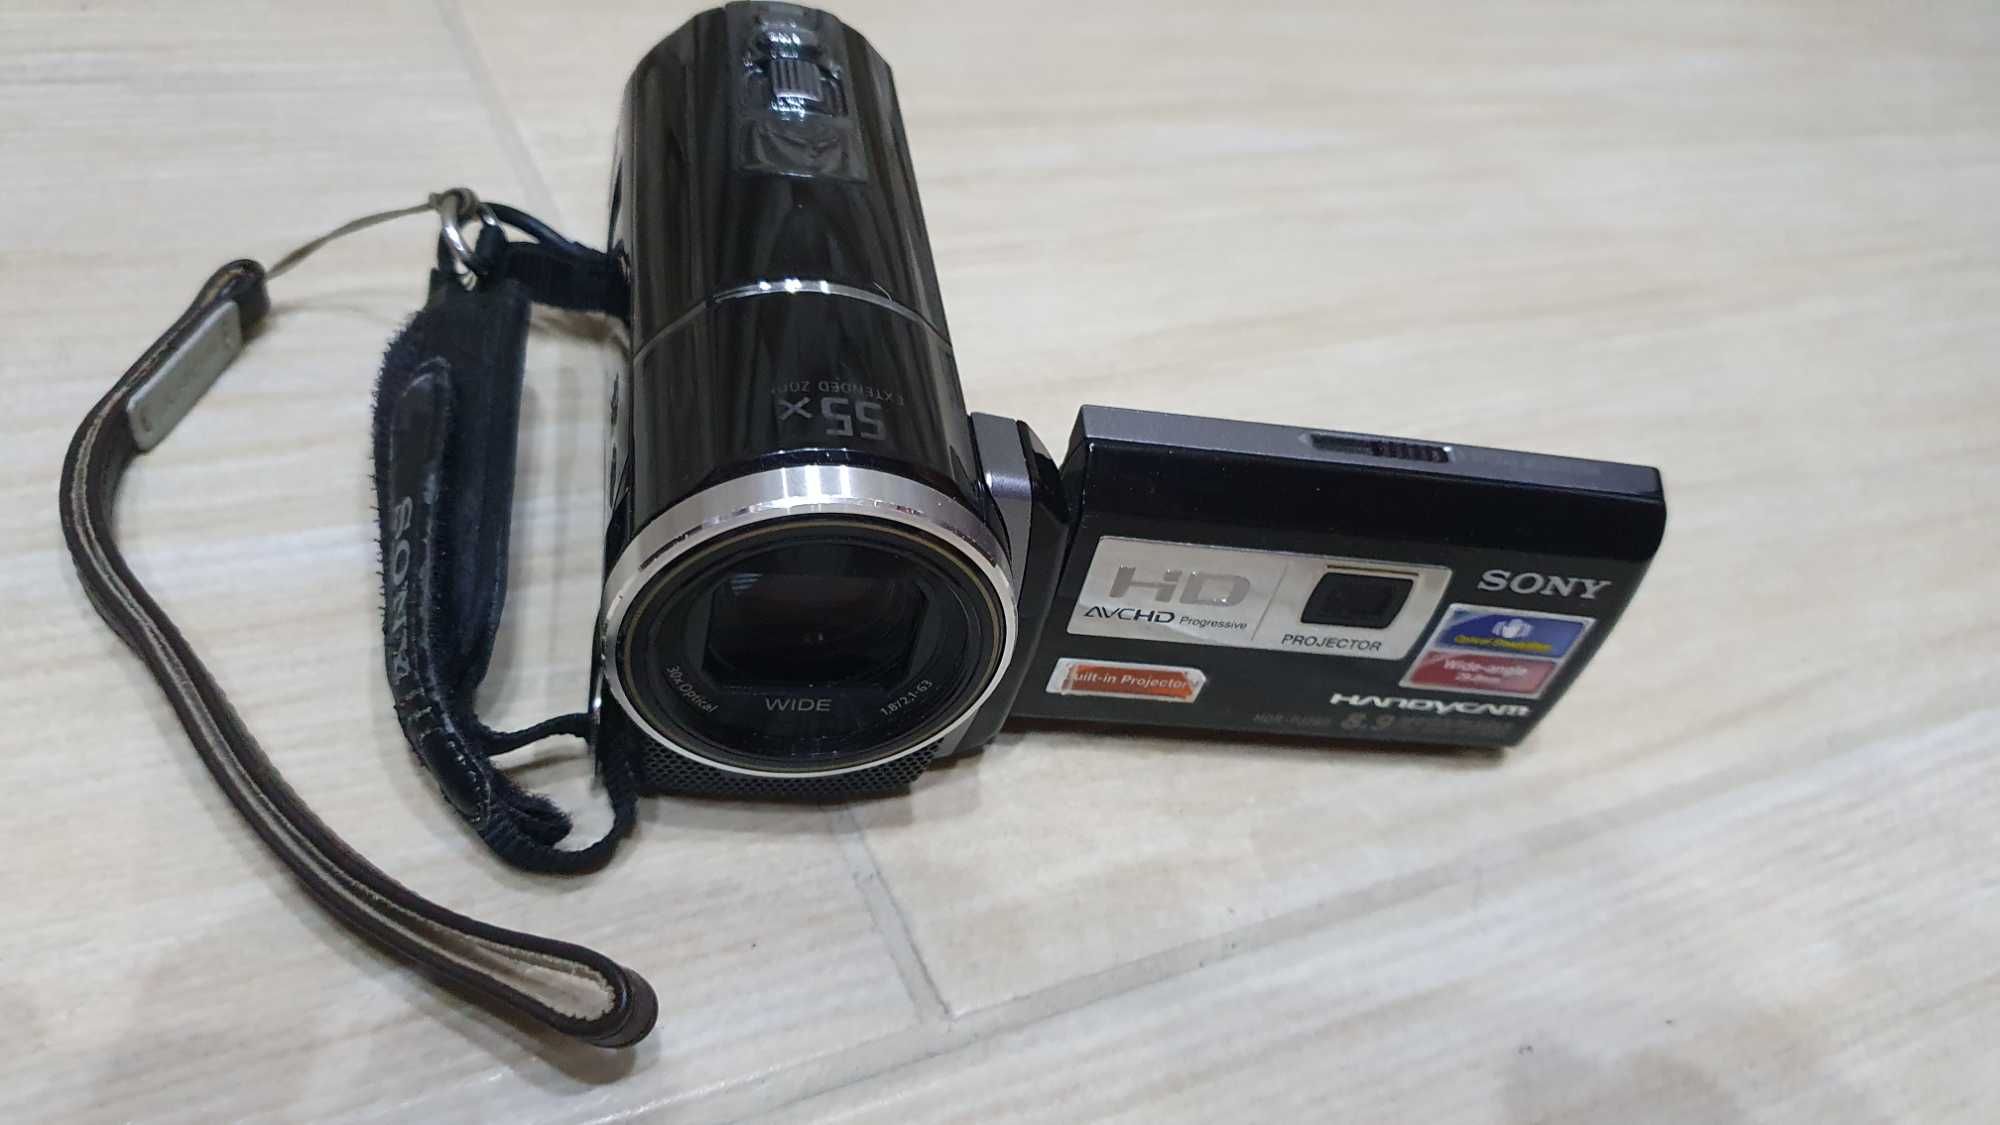 Kamera SONY HDR-PJ260VE z dyskiem wewnętrznym i wbudowanym projektorem